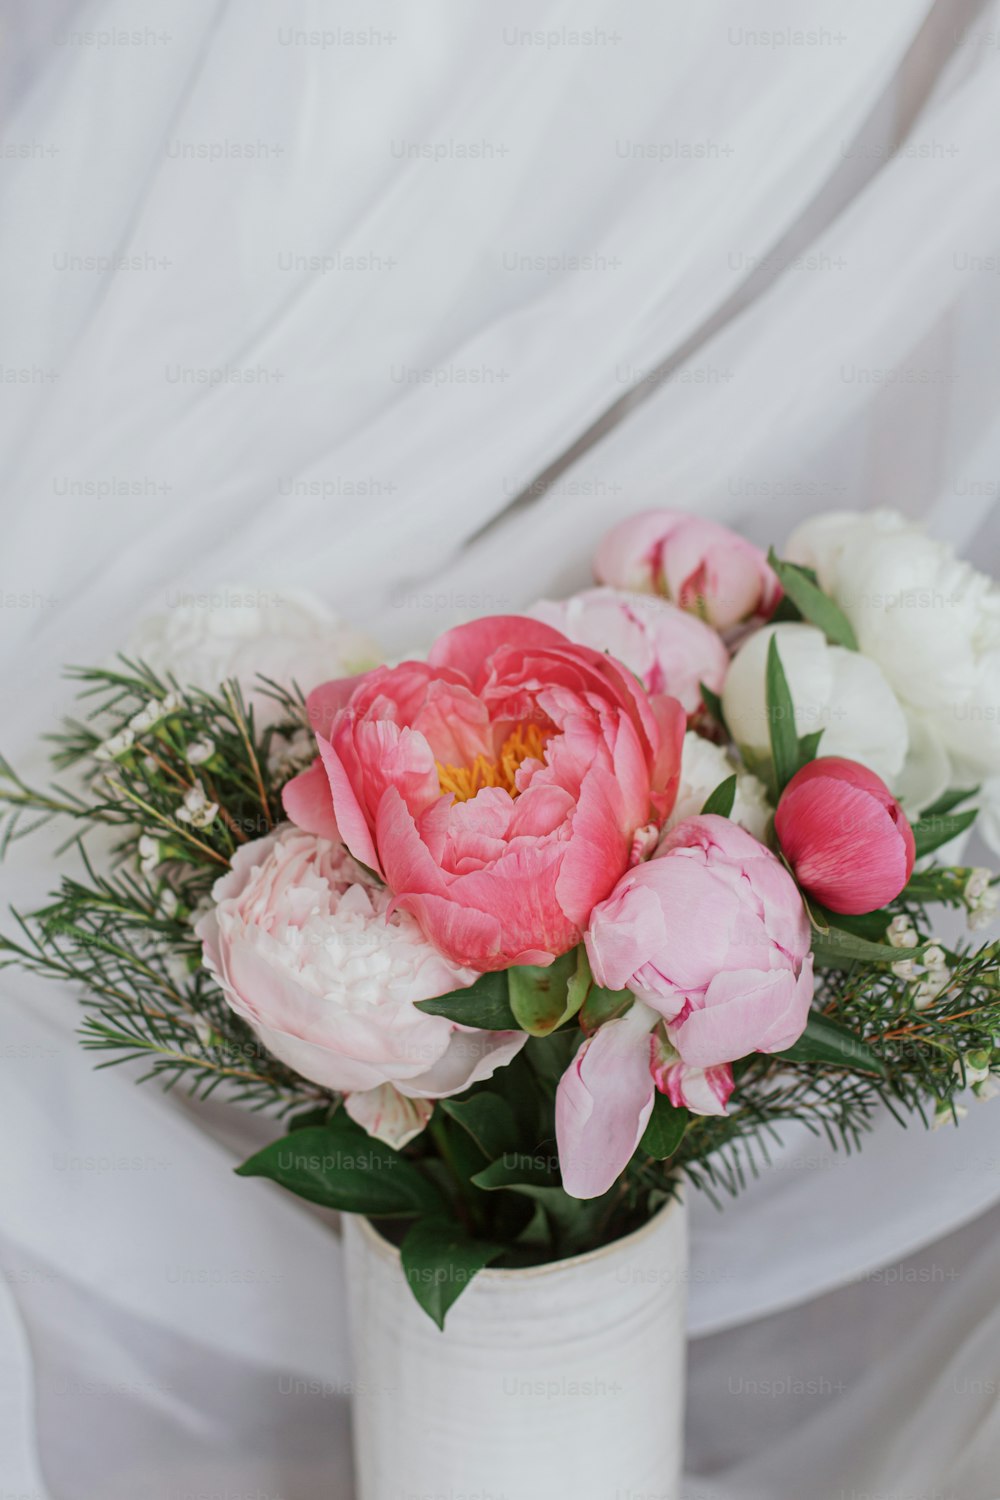 Hermoso ramo de peonías con estilo sobre fondo de tela blanca suave. Flores de peonía rosas y blancas en jarrón de cerámica sobre fondo rústico pastel. Feliz día de la madre. Ramo de novia moderno